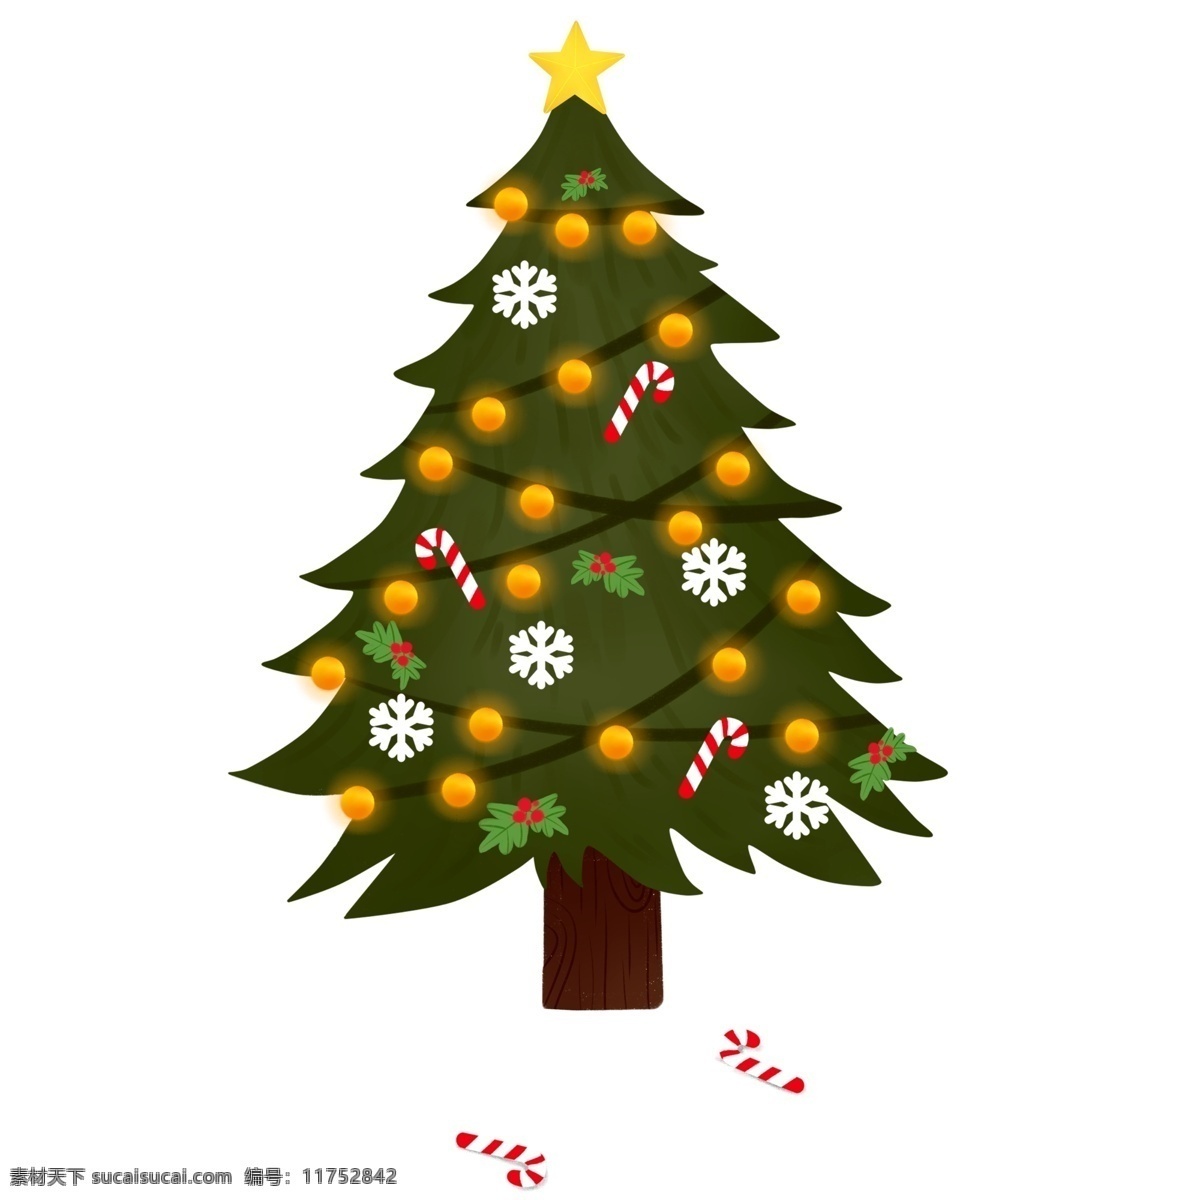 手绘 复古 颗 圣诞树 卡通 植物 插画 雪花 节日元素 糖果